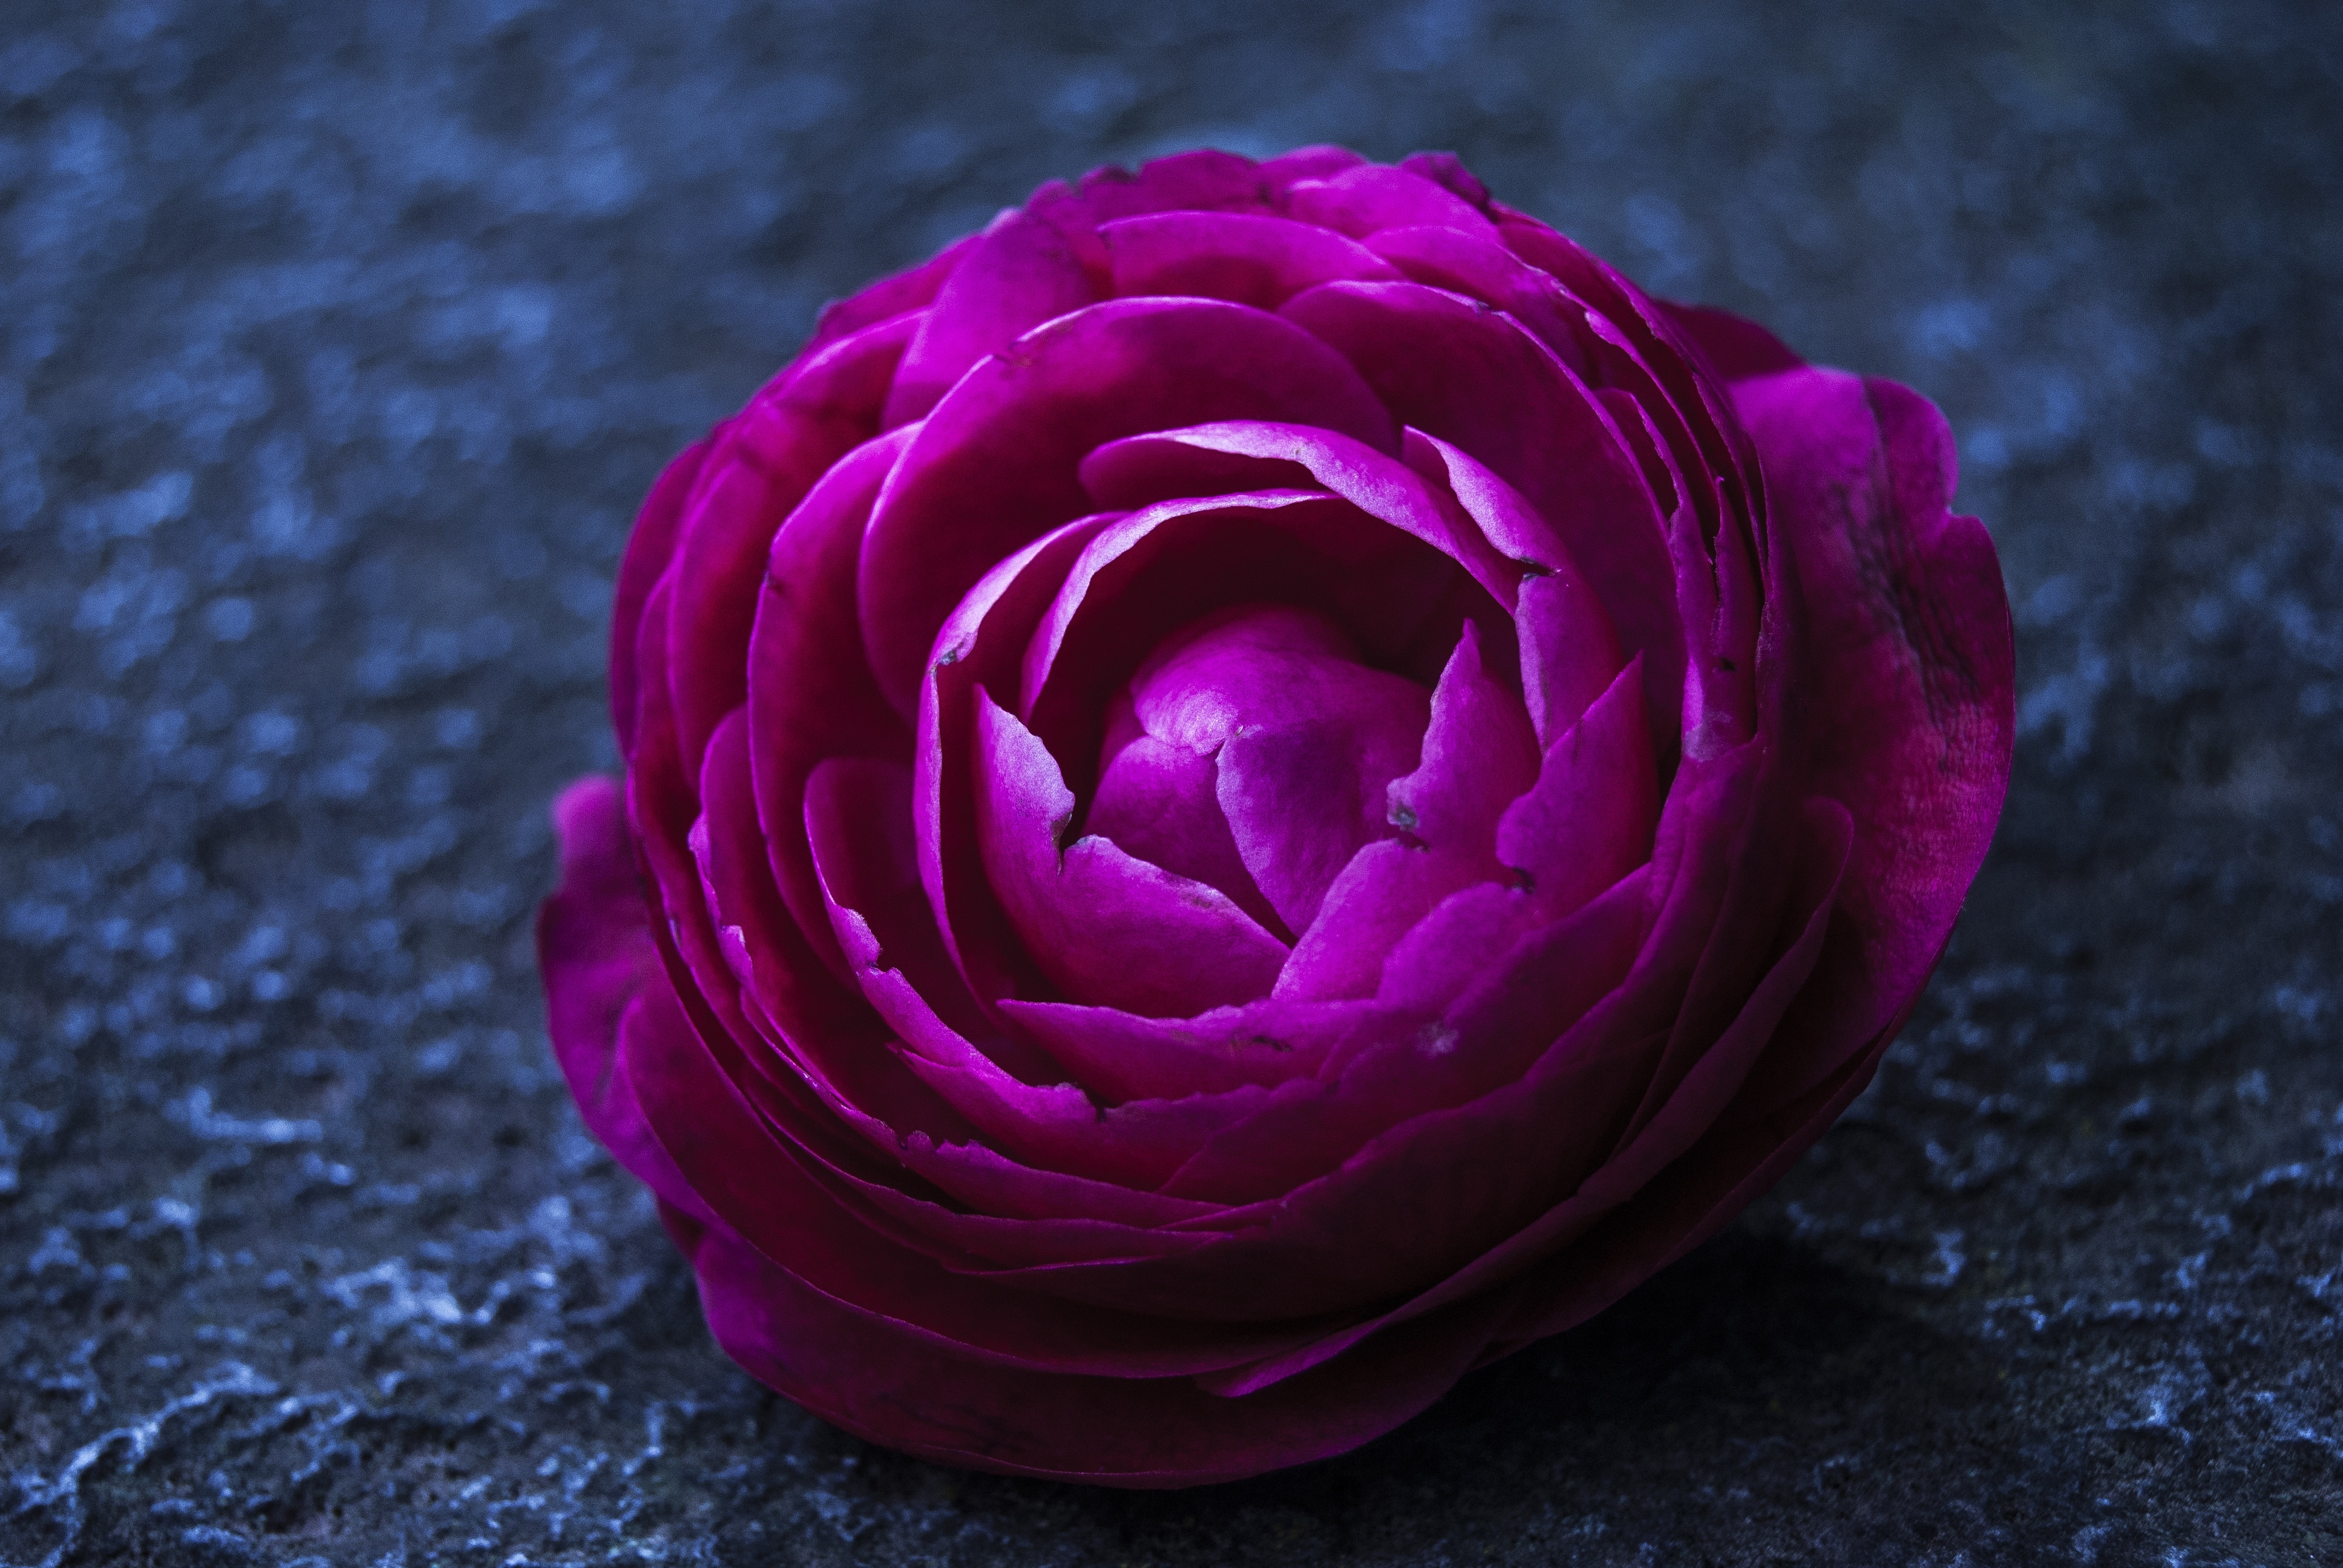 Пурпурные цветы